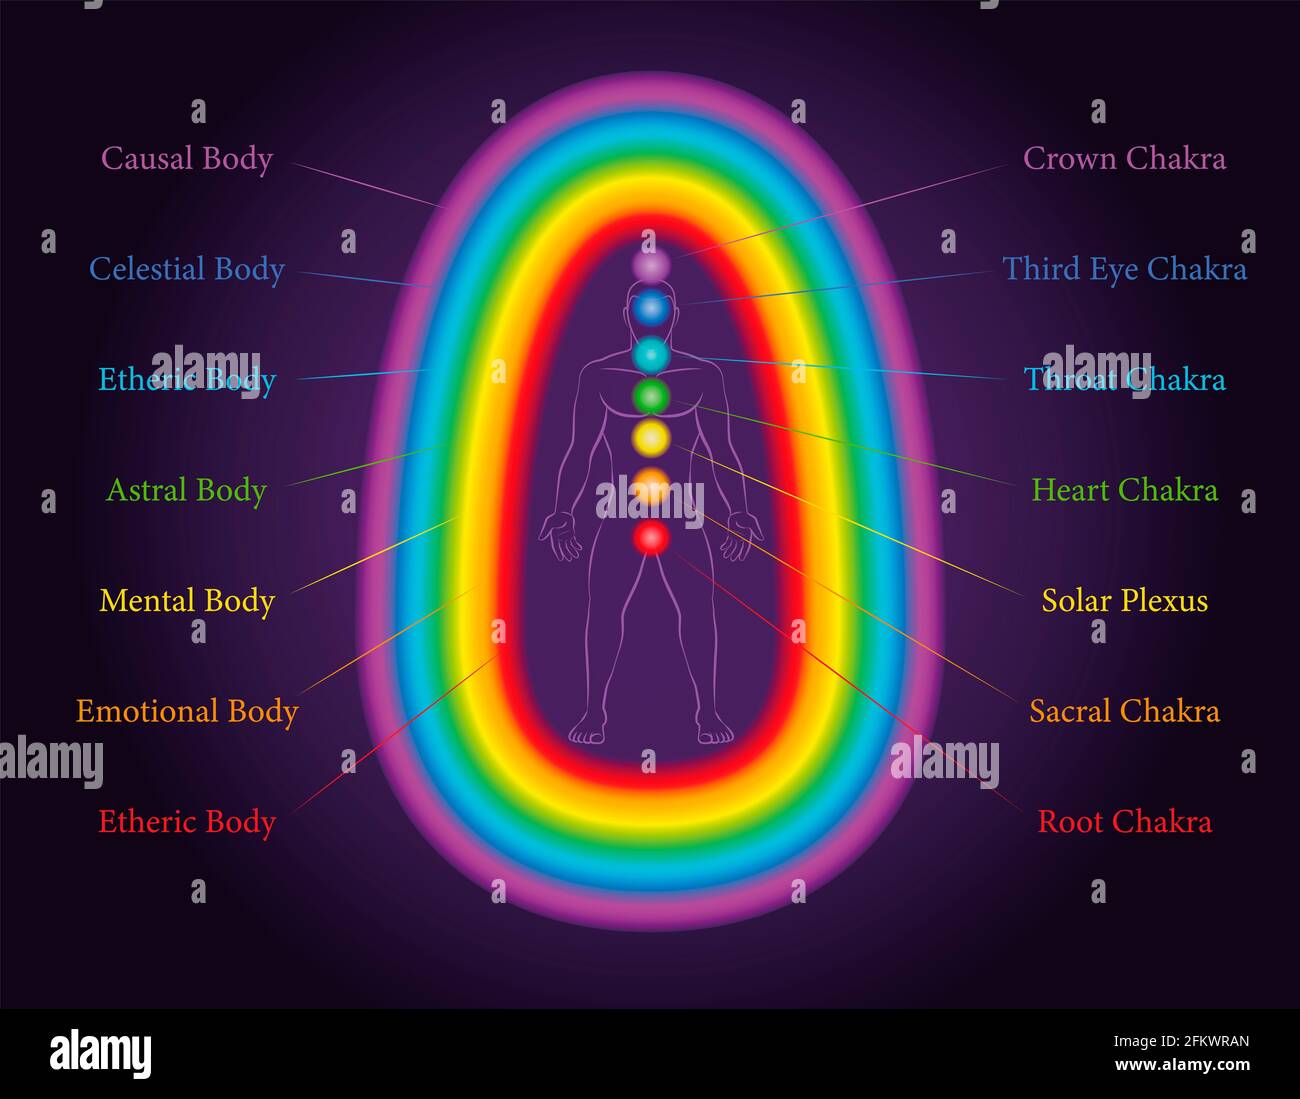 Les corps de l'aura. Les sept couches d'un homme méditant avec des chakras apparentés dans les mêmes couleurs. Éthérique, émotionnel, mental, astral, céleste, couche causale. Banque D'Images